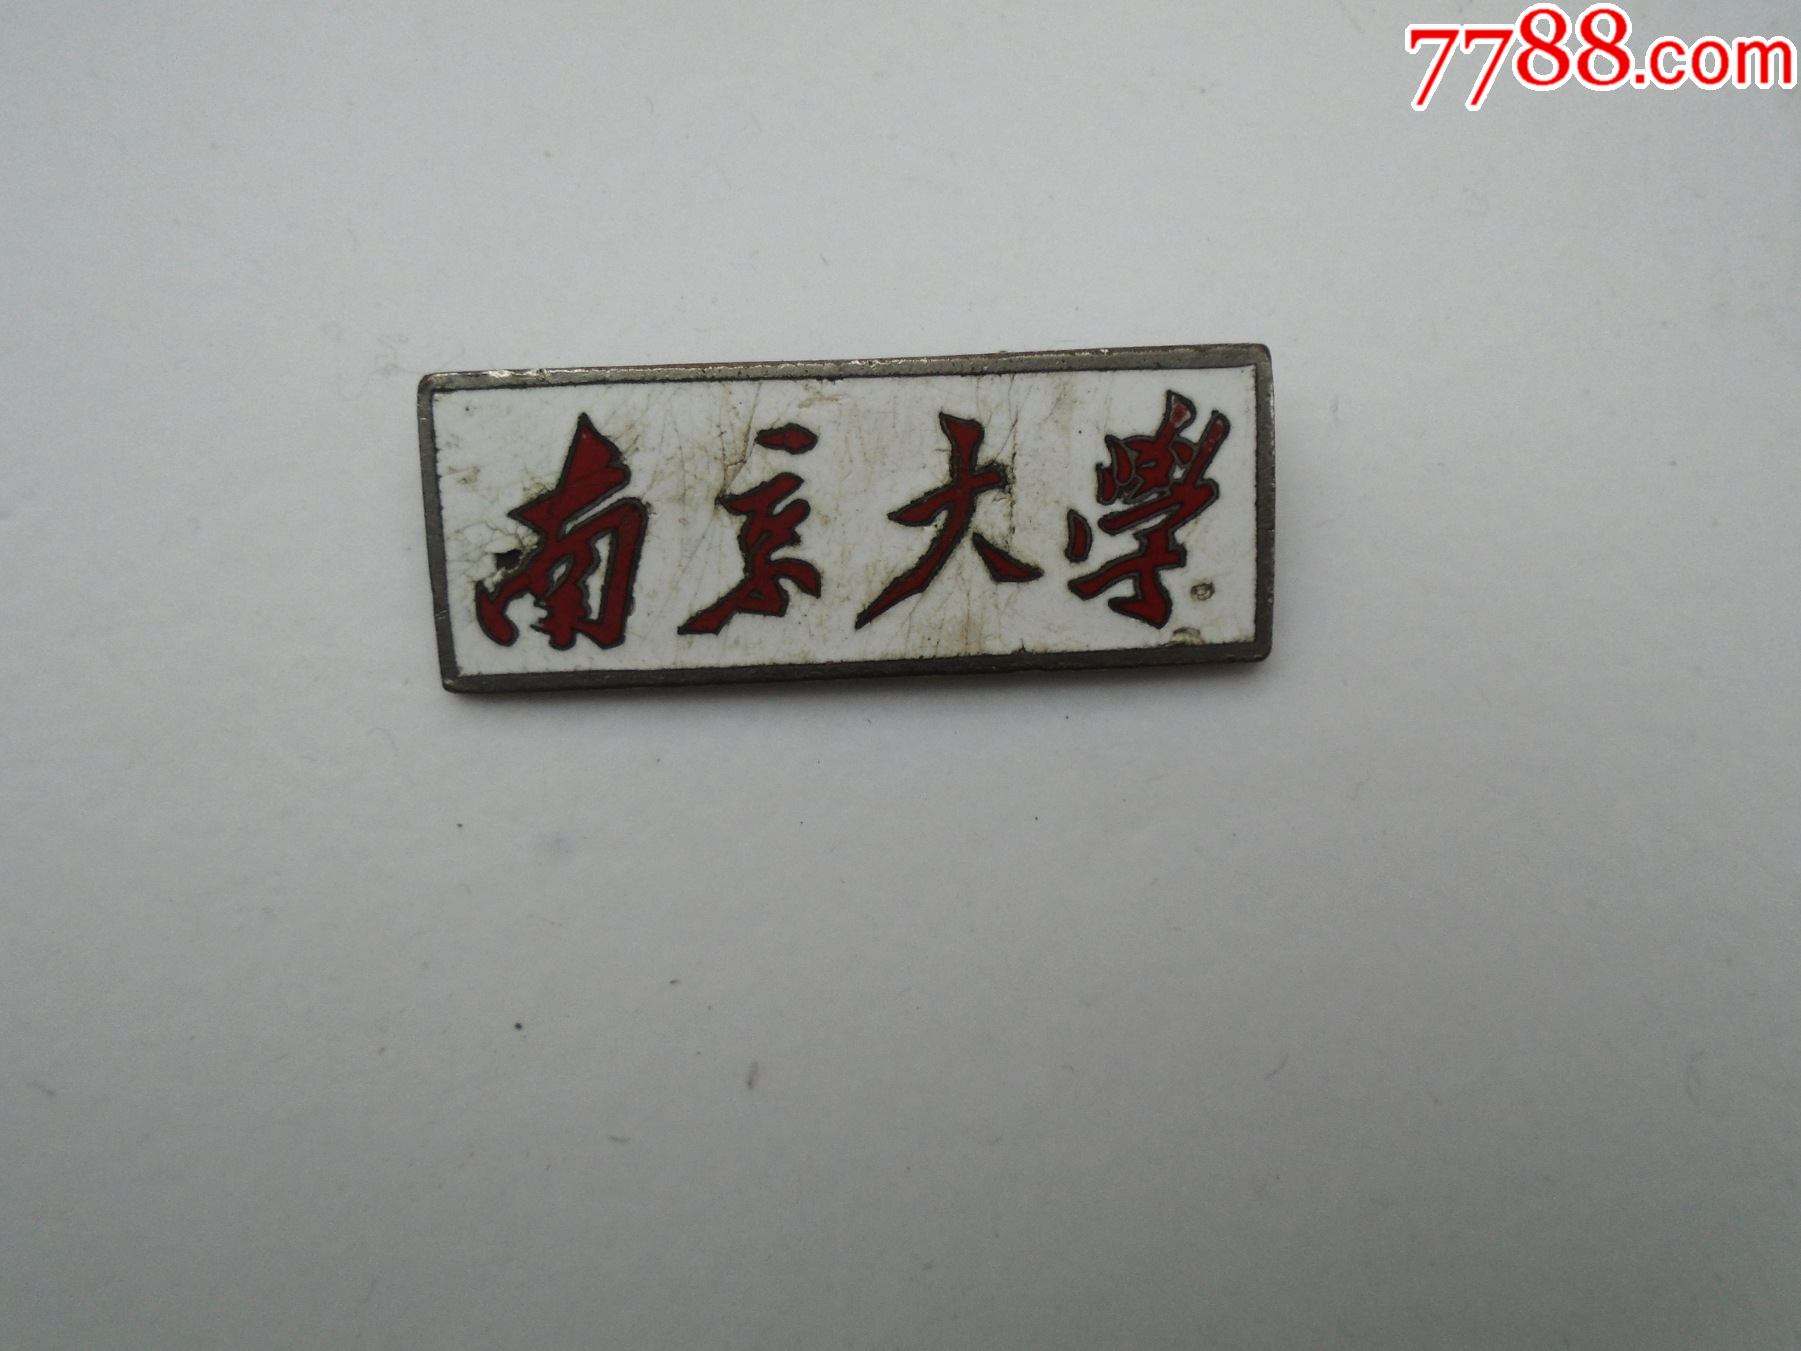 南京大学早期老校徽,包真包老.尺寸:4.1*1.5厘米.材质